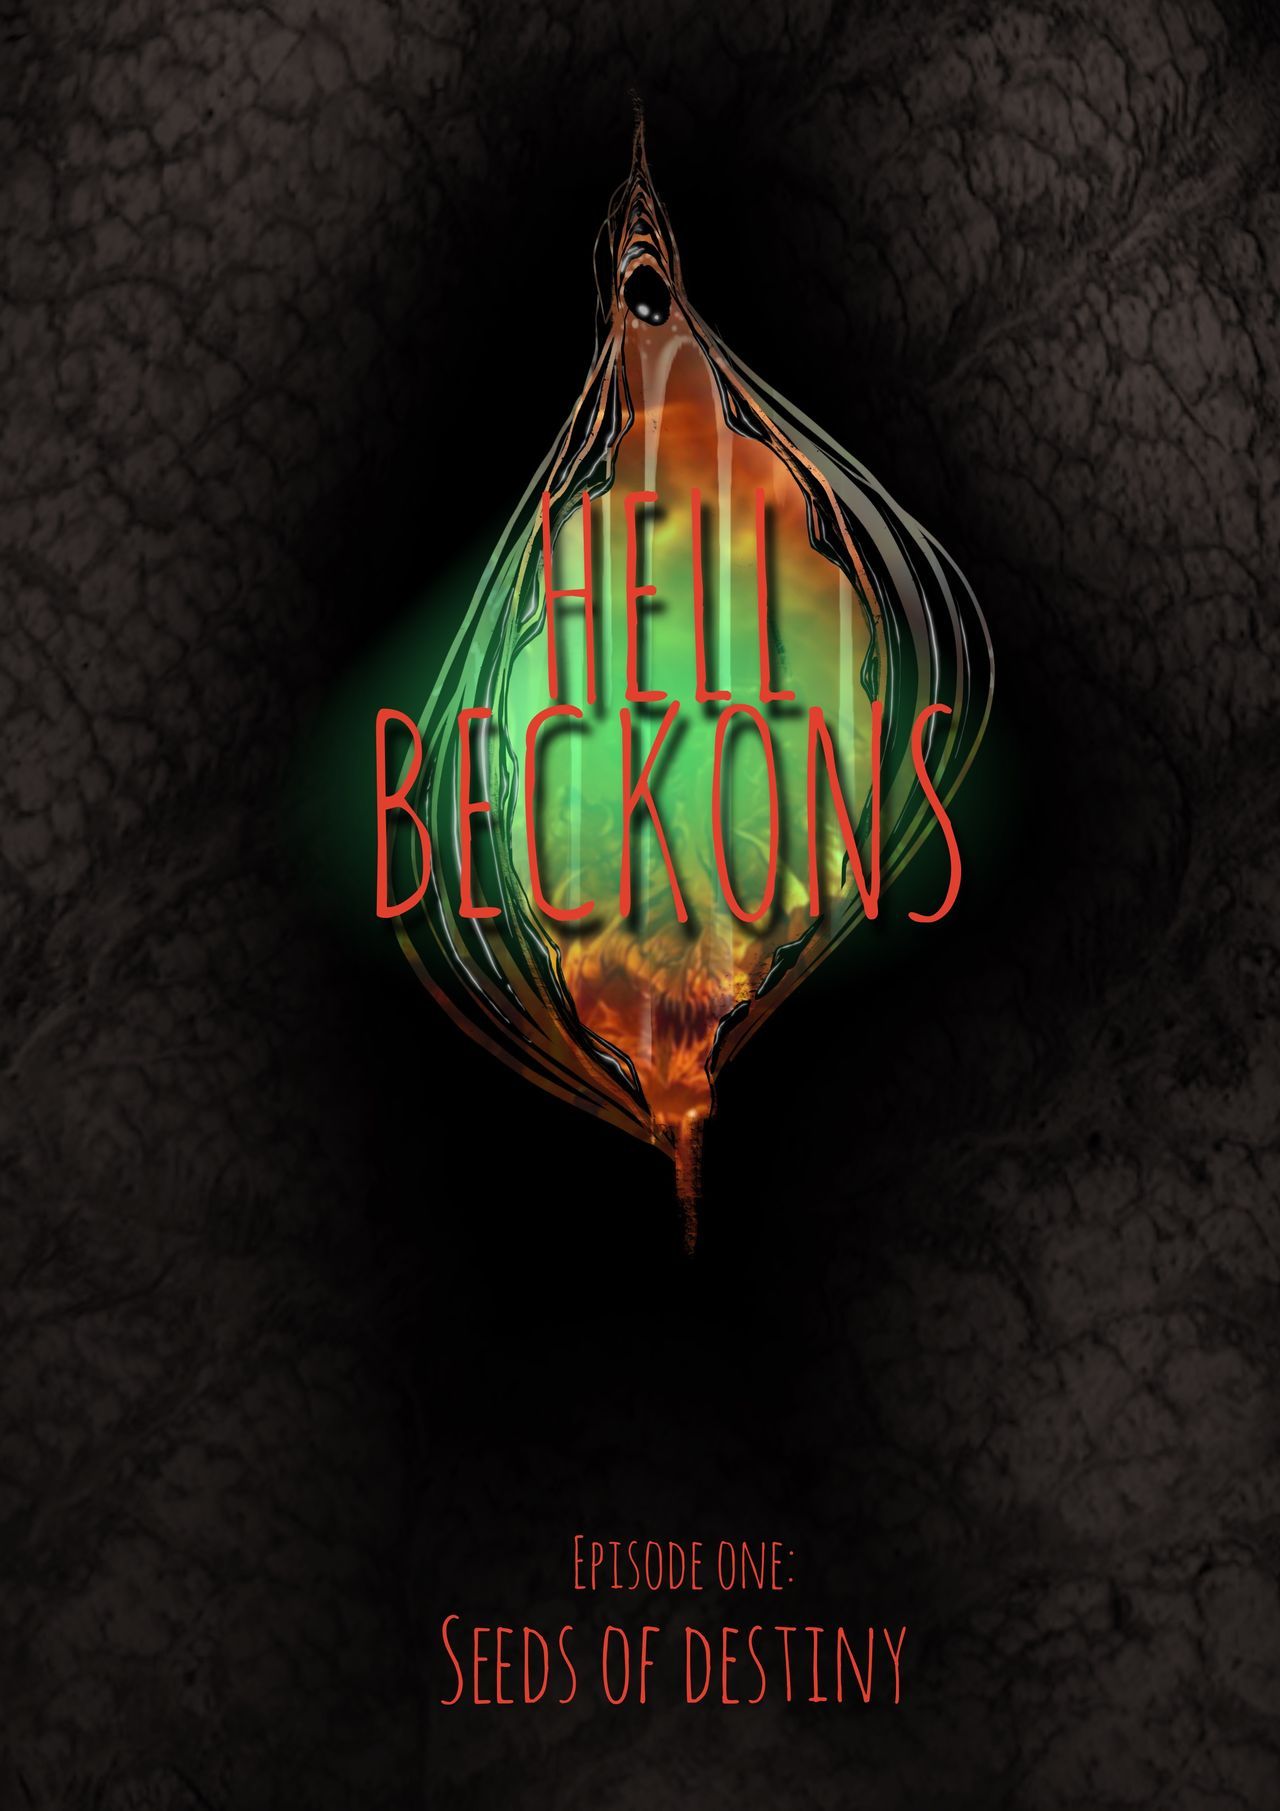 [jackthemonkey] Hell Beckons 31